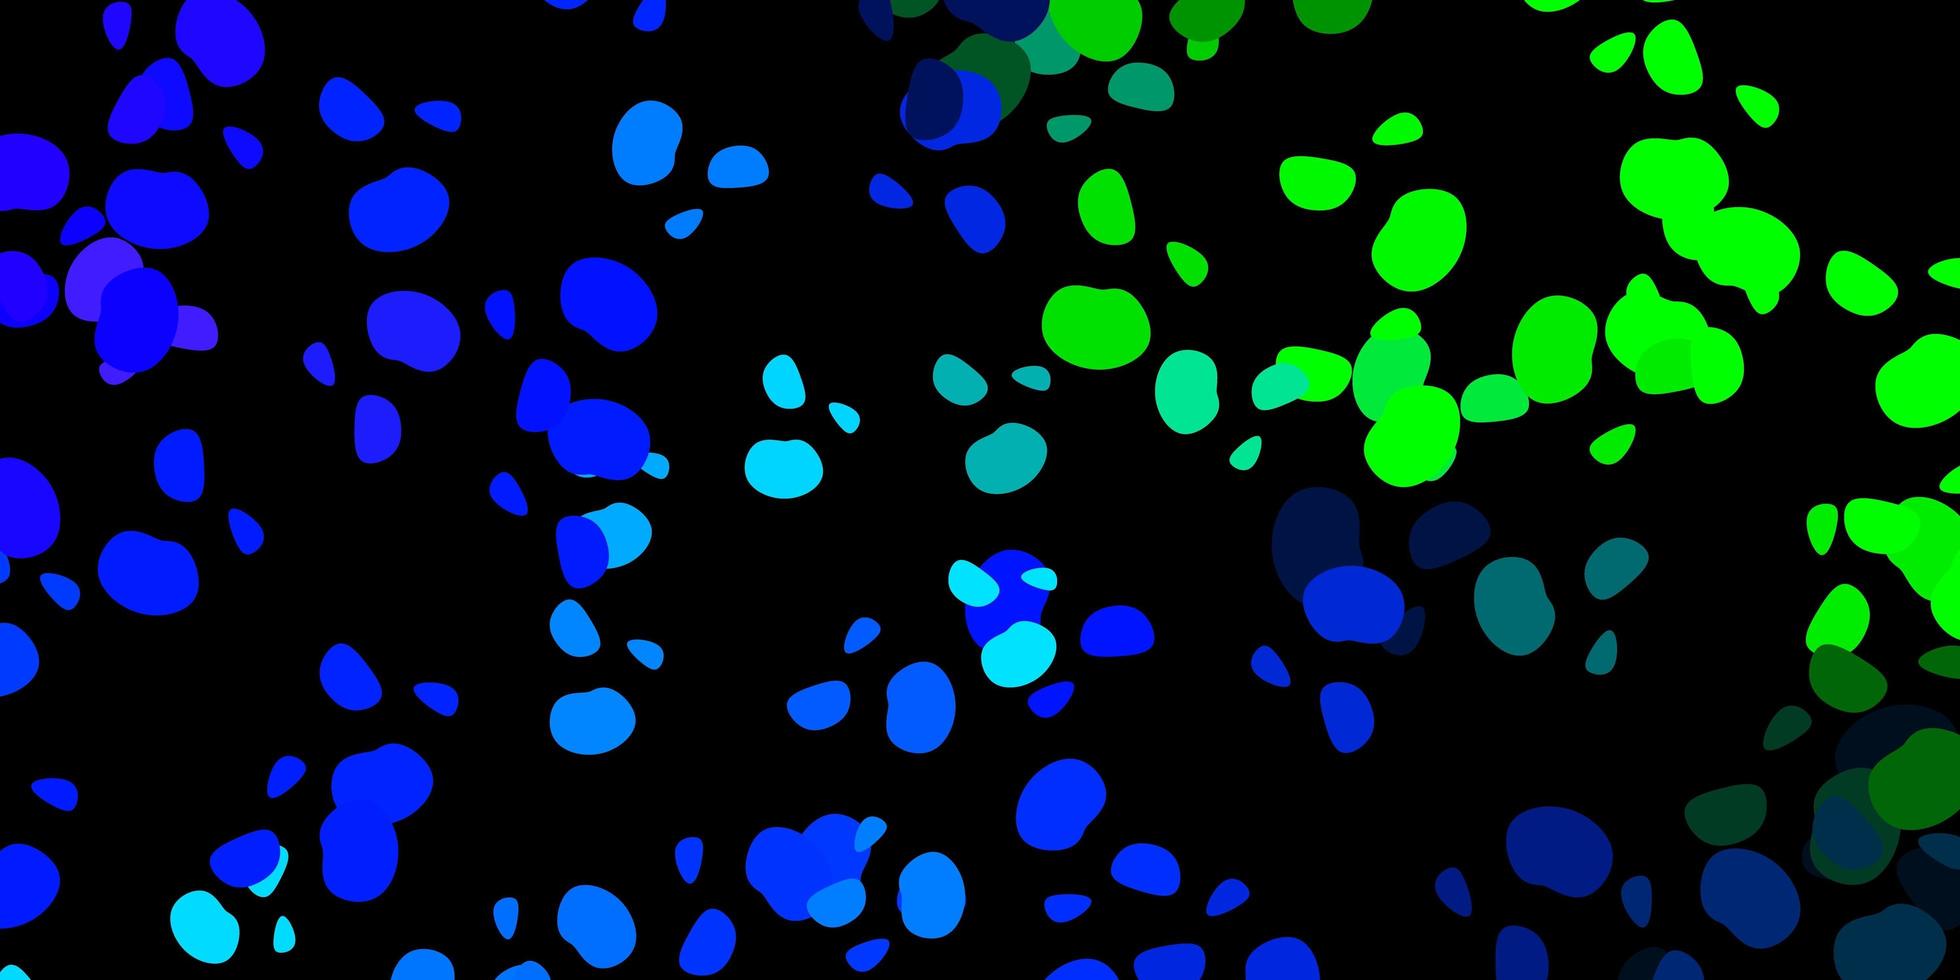 padrão de vetor azul e verde escuro com formas abstratas.